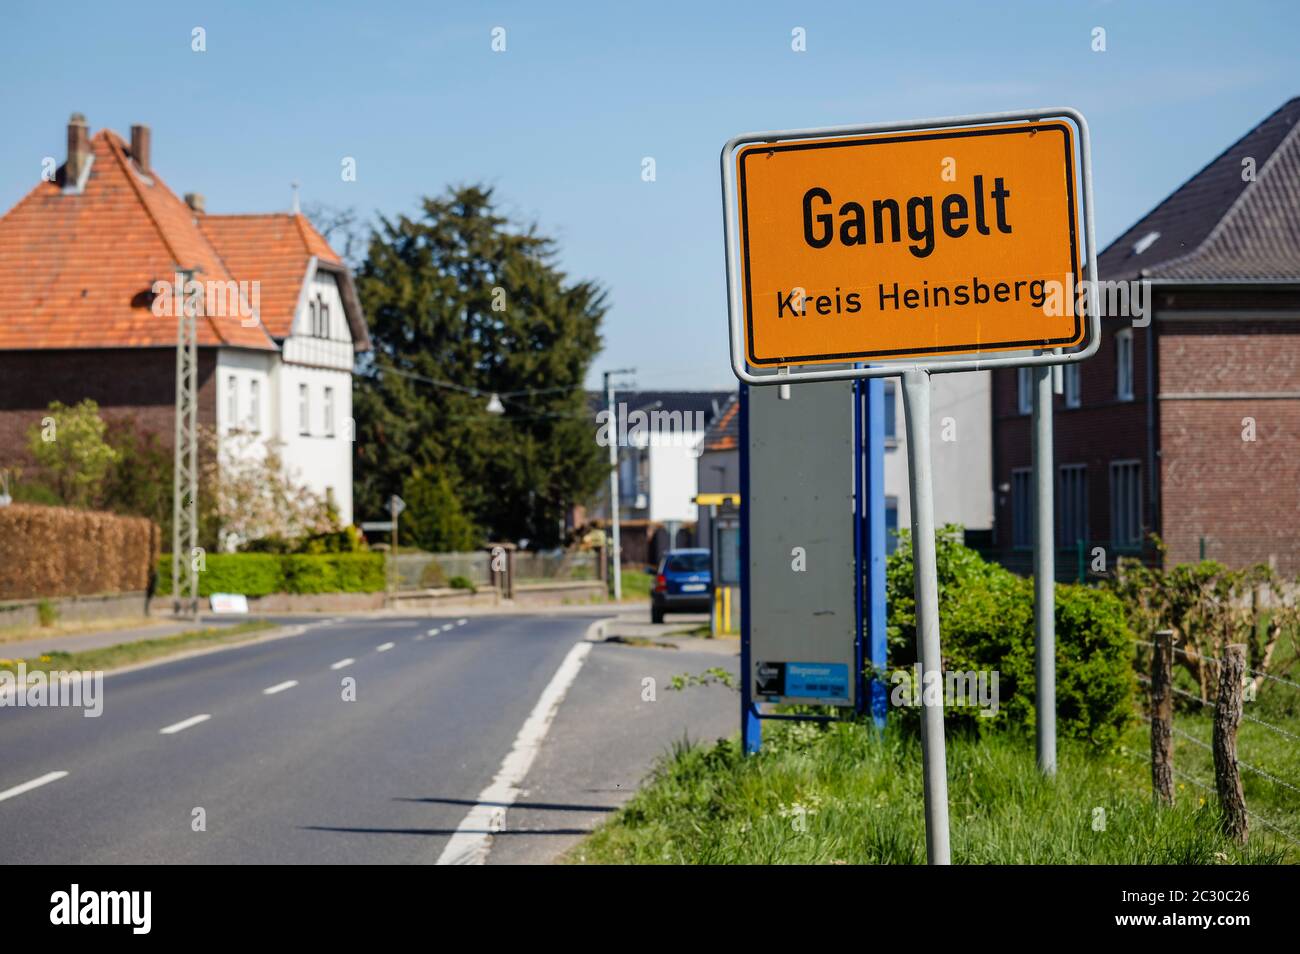 Ortsschild Gangelt im Landkreis Heinsberg, Gangelt ist das erste deutsche Epizentrum der Coronaepidemie, Heinsberg, Nordrhein-Westfalen, Deutschland Stockfoto